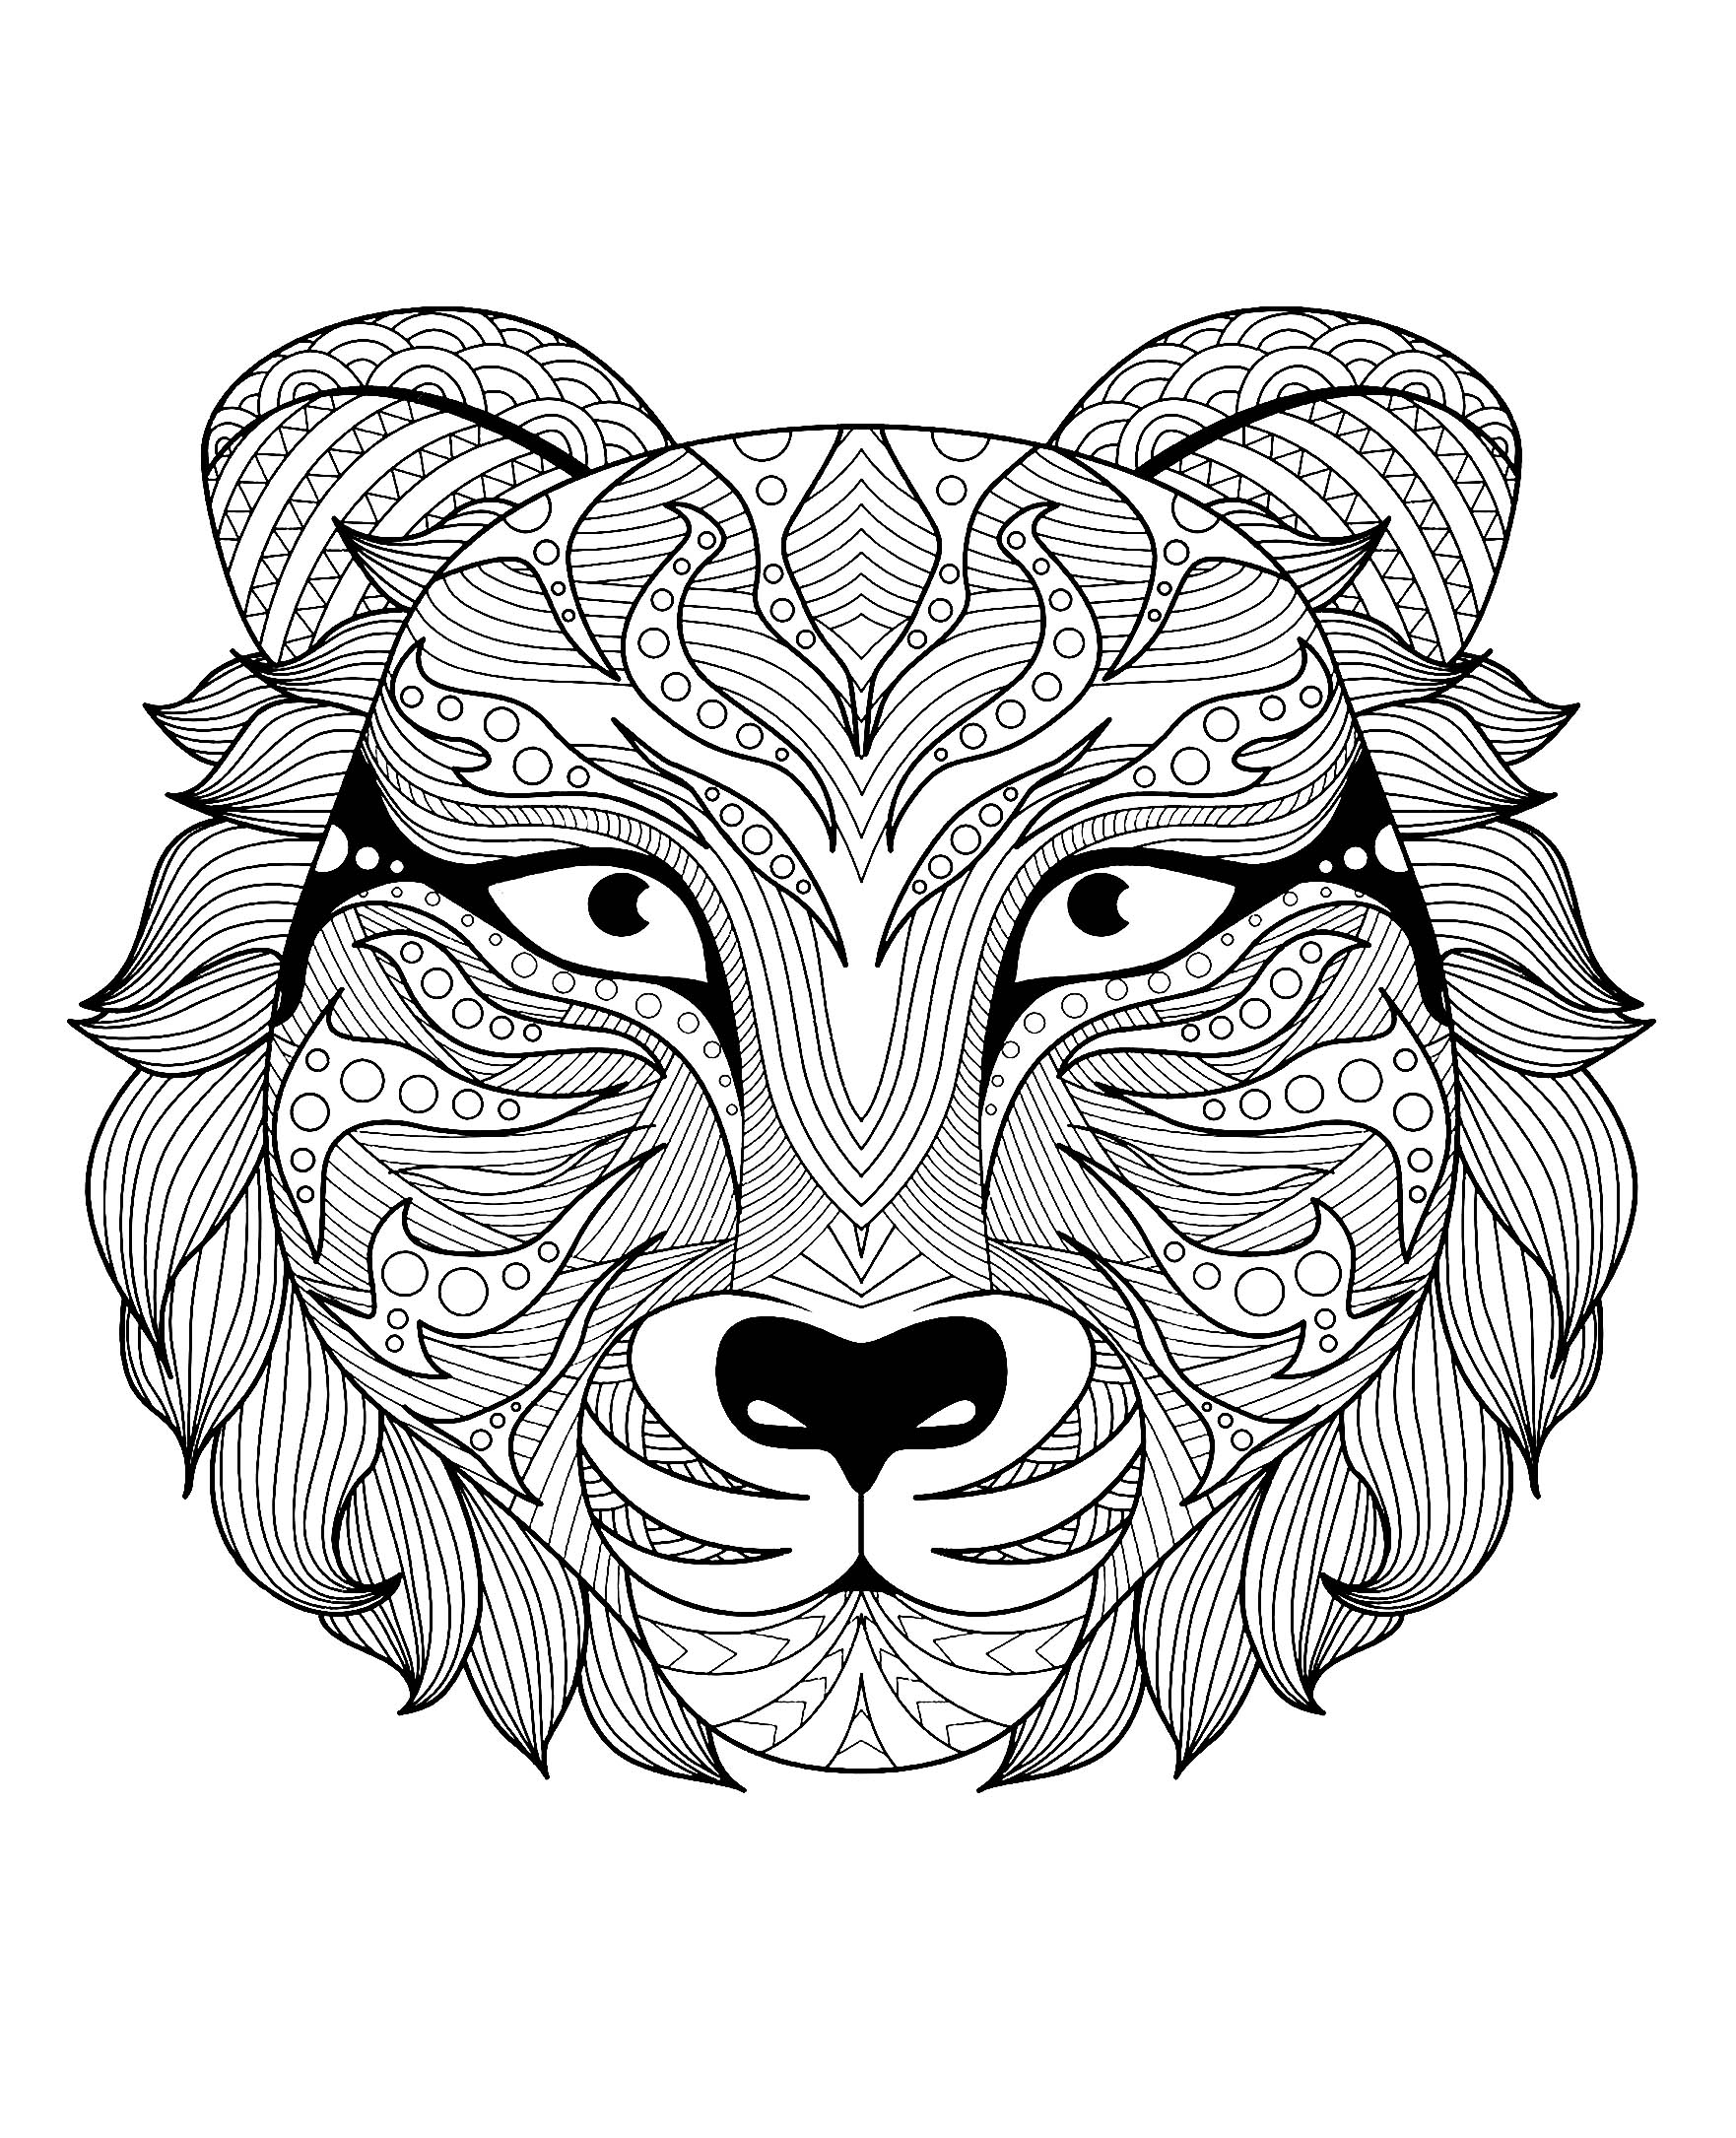 Magnifica testa di tigre, Artista : Bimdeedee   Fonte : 123rf